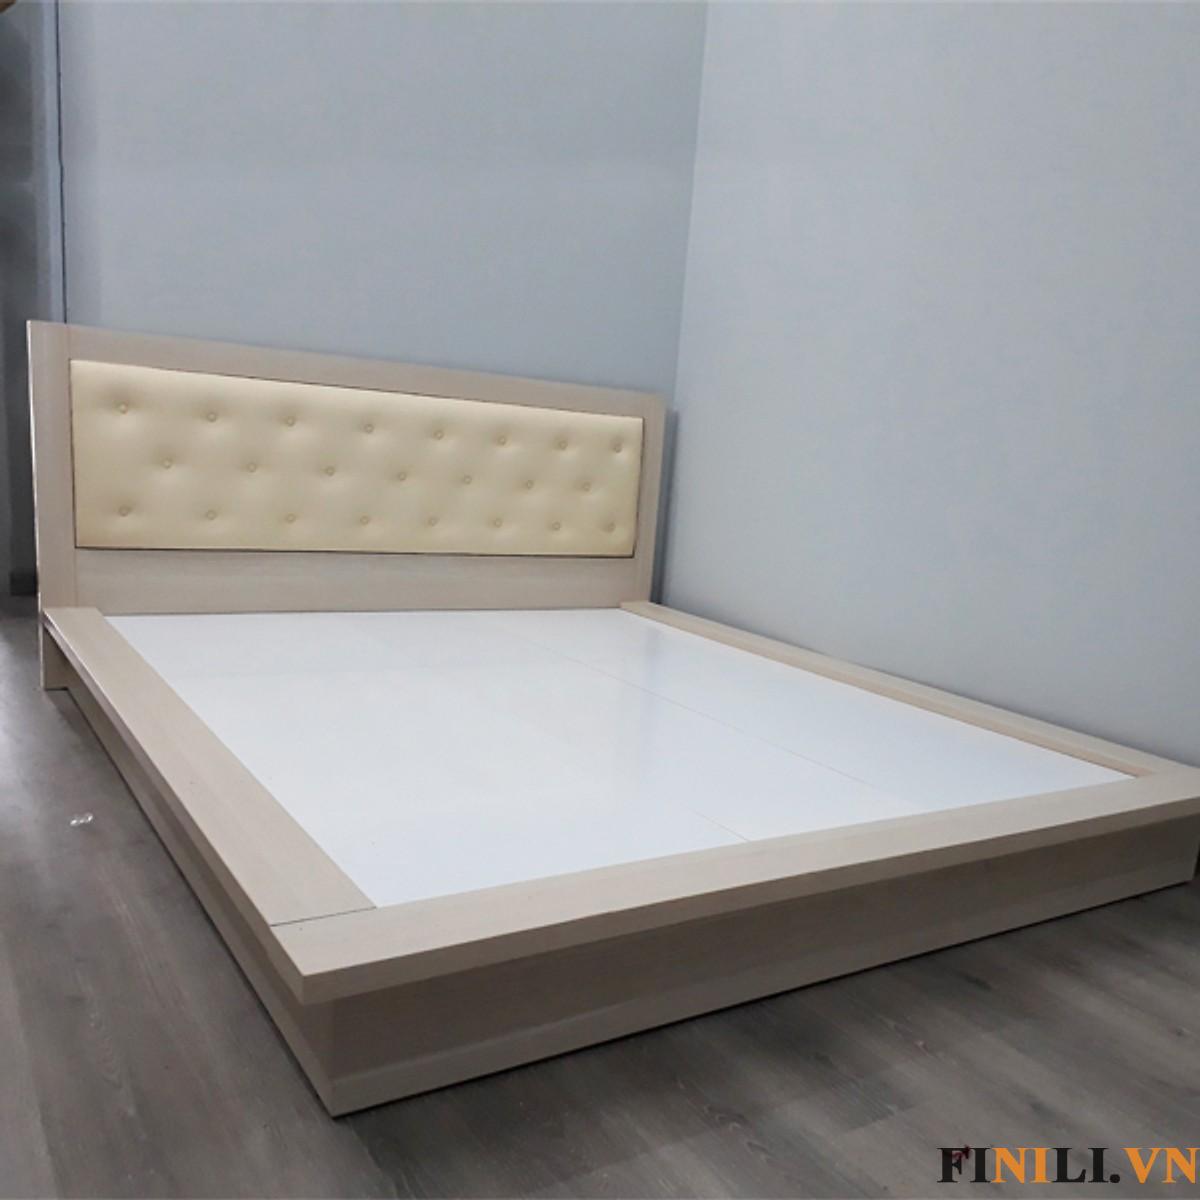 Giường ngủ kiểu Nhật gỗ công nghiệp FNL-10012 là một trong những thiết kế mới, ấn tượng và hiện đại